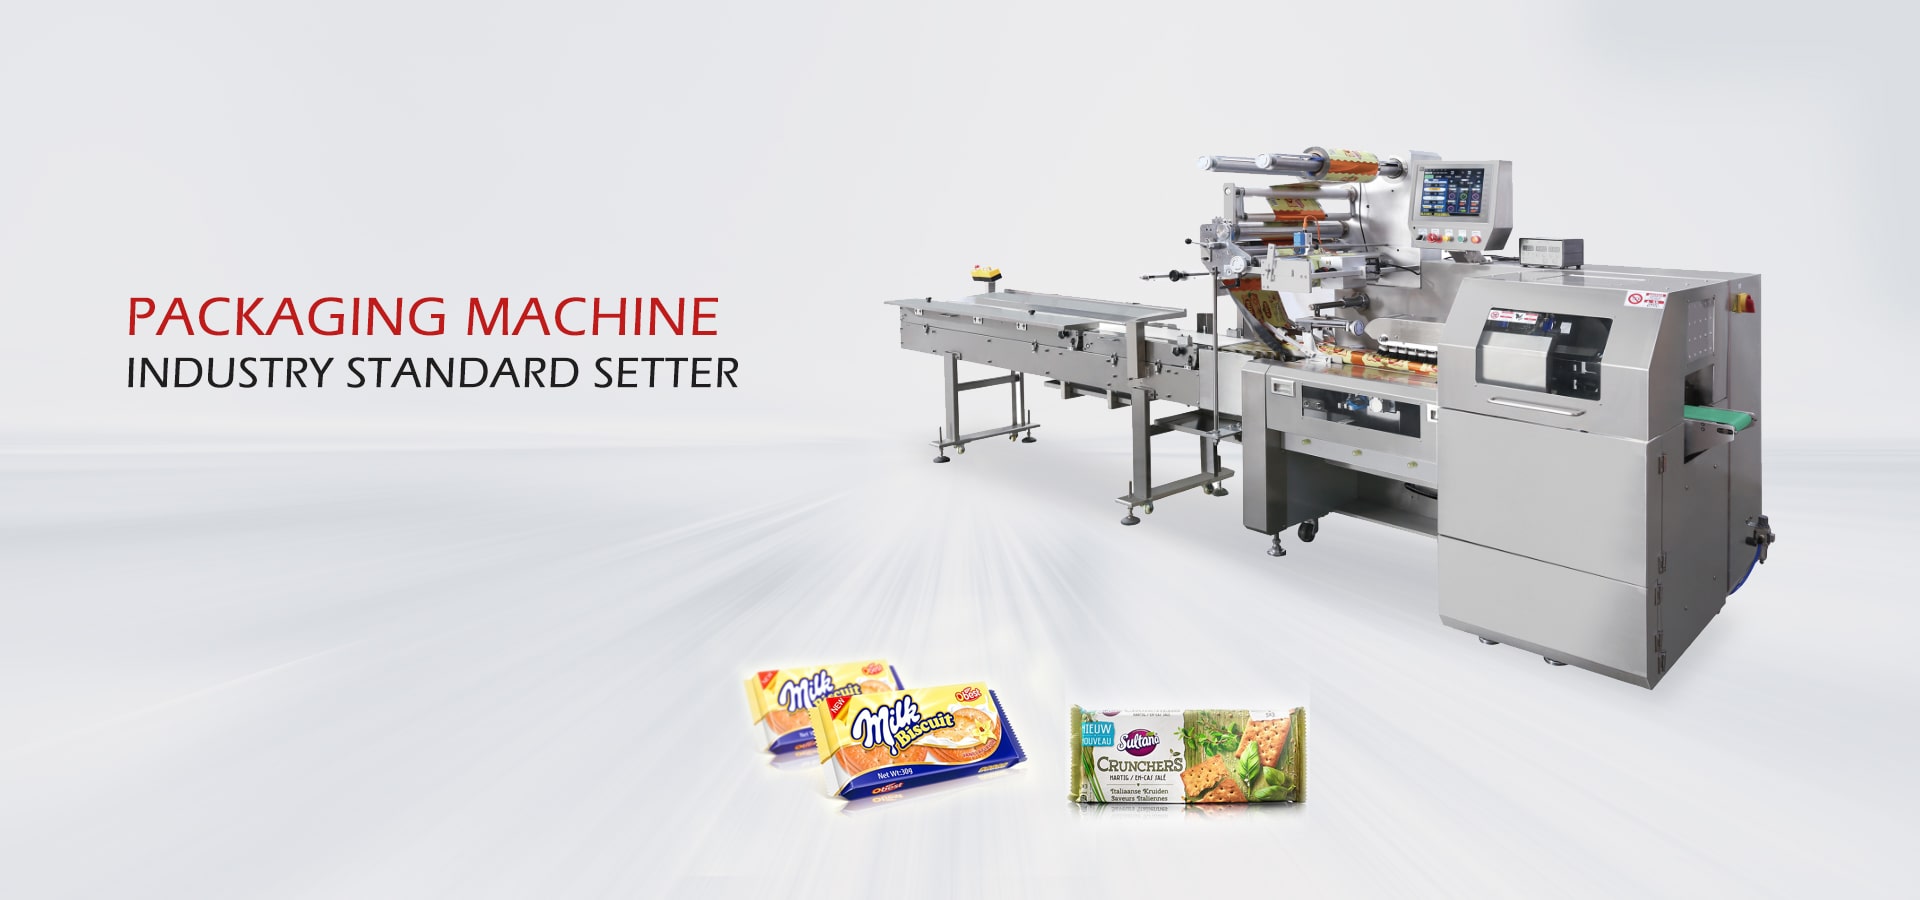 RPH खाद्य पैकिंग मशीनों में केक पैकेजिंग मशीन, सूखे मेवे की पैकेजिंग, चॉकलेट पैकेजिंग मशीन आदि शामिल हैं।